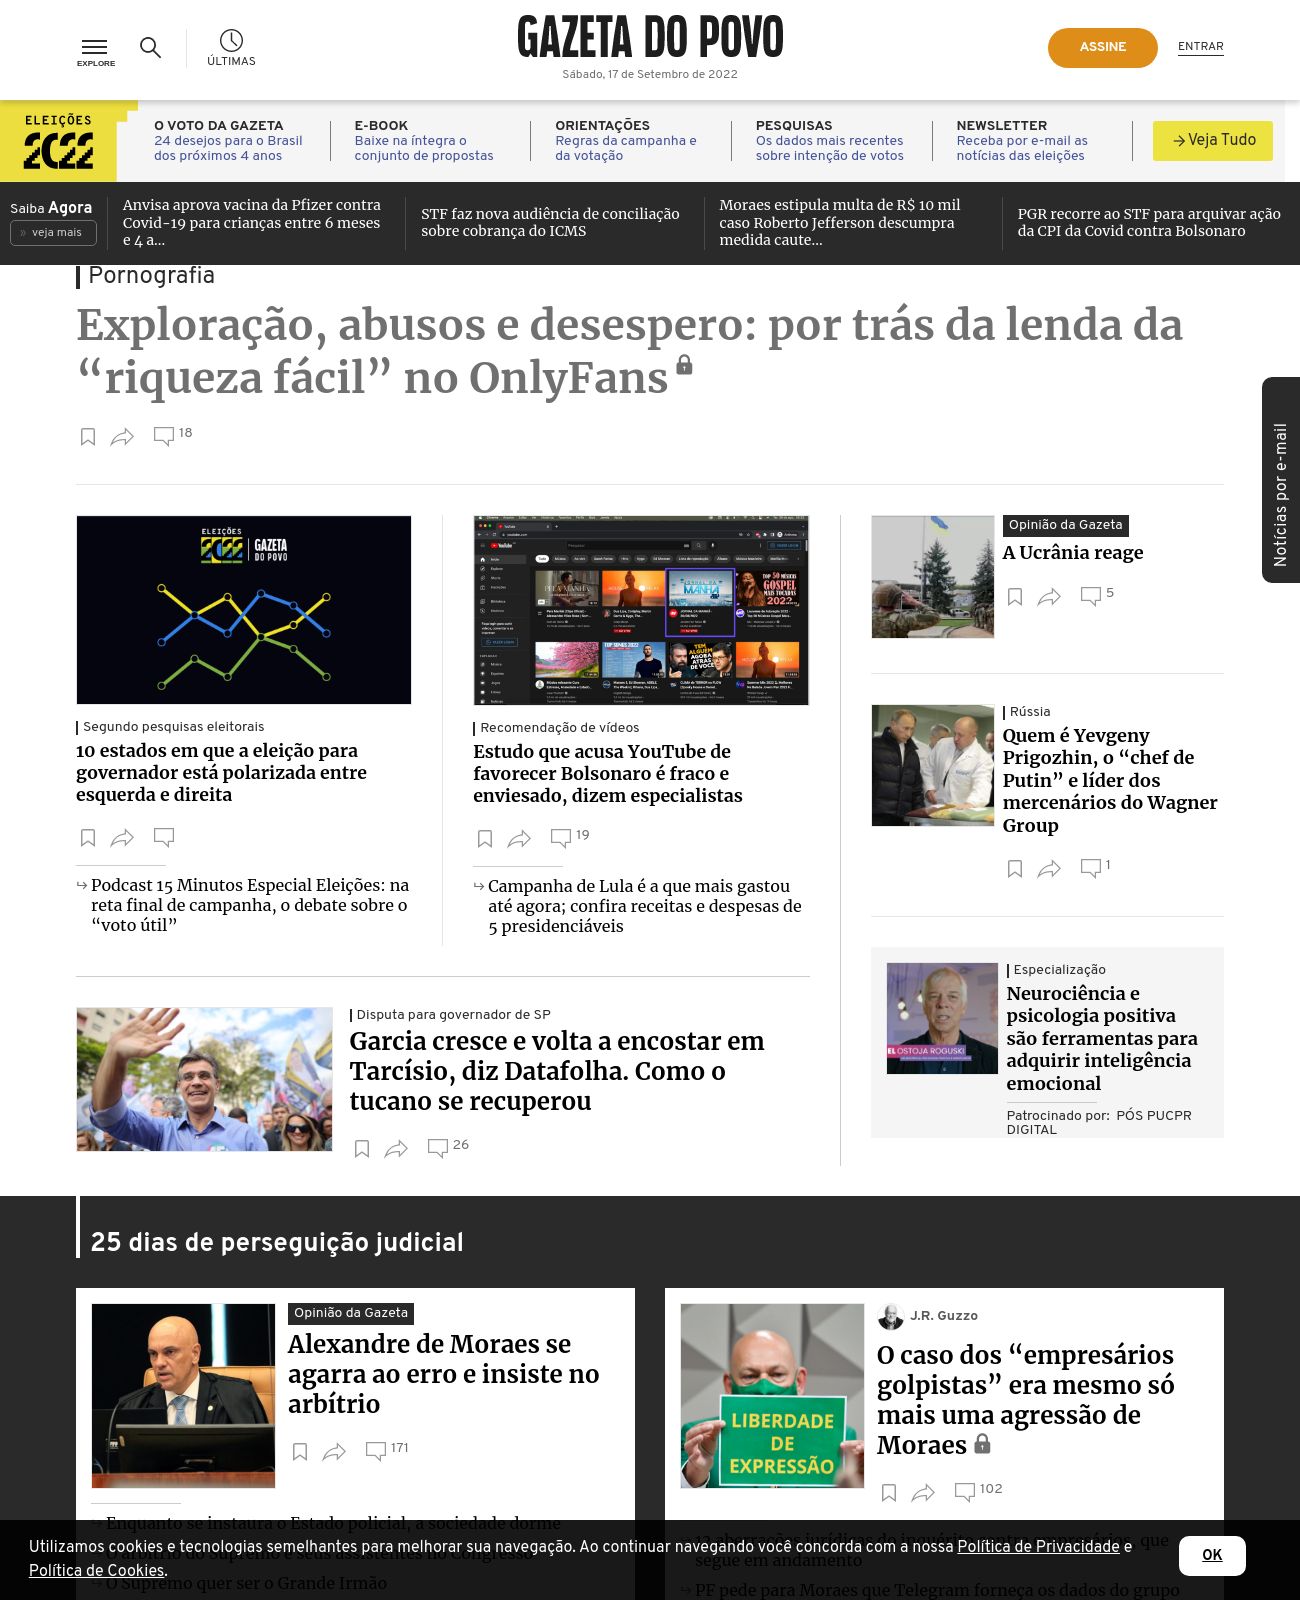 Gazeta do Povo at 2022-09-17 09:03:17-03:00 local time